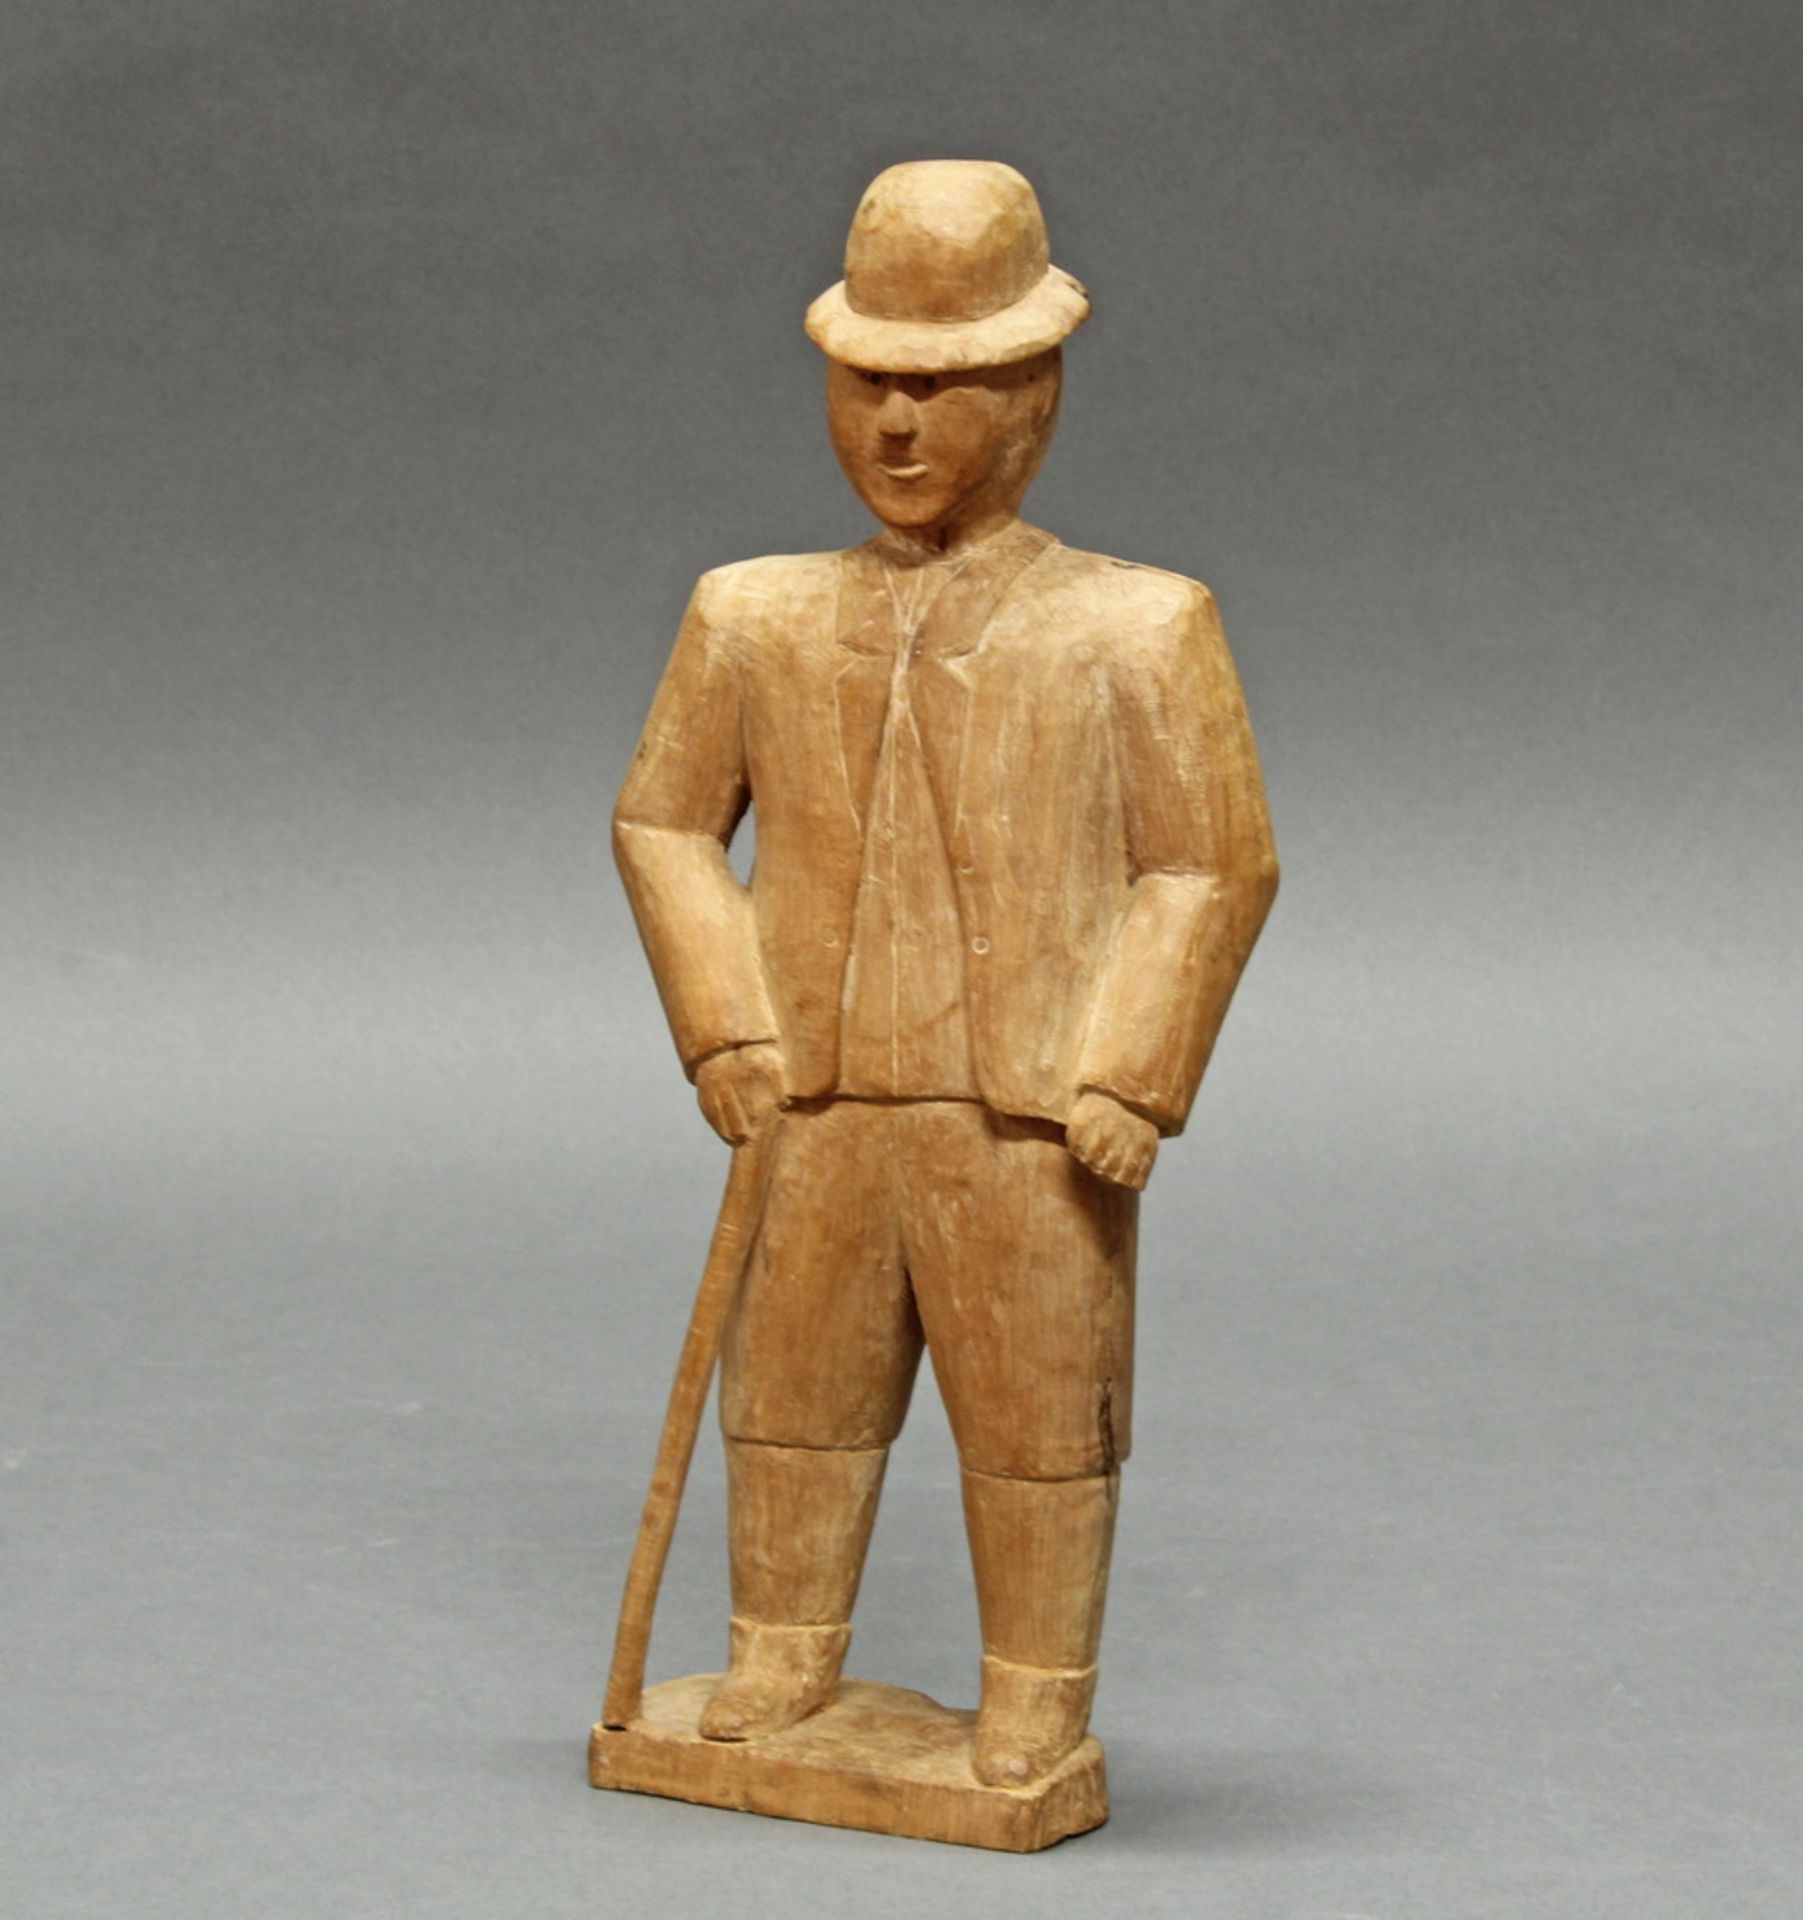 Sog. "Kolon"-Figur, Darstellung eines Europäers, hier wohl eines Briten, Venda, Transvaal, Simbabw